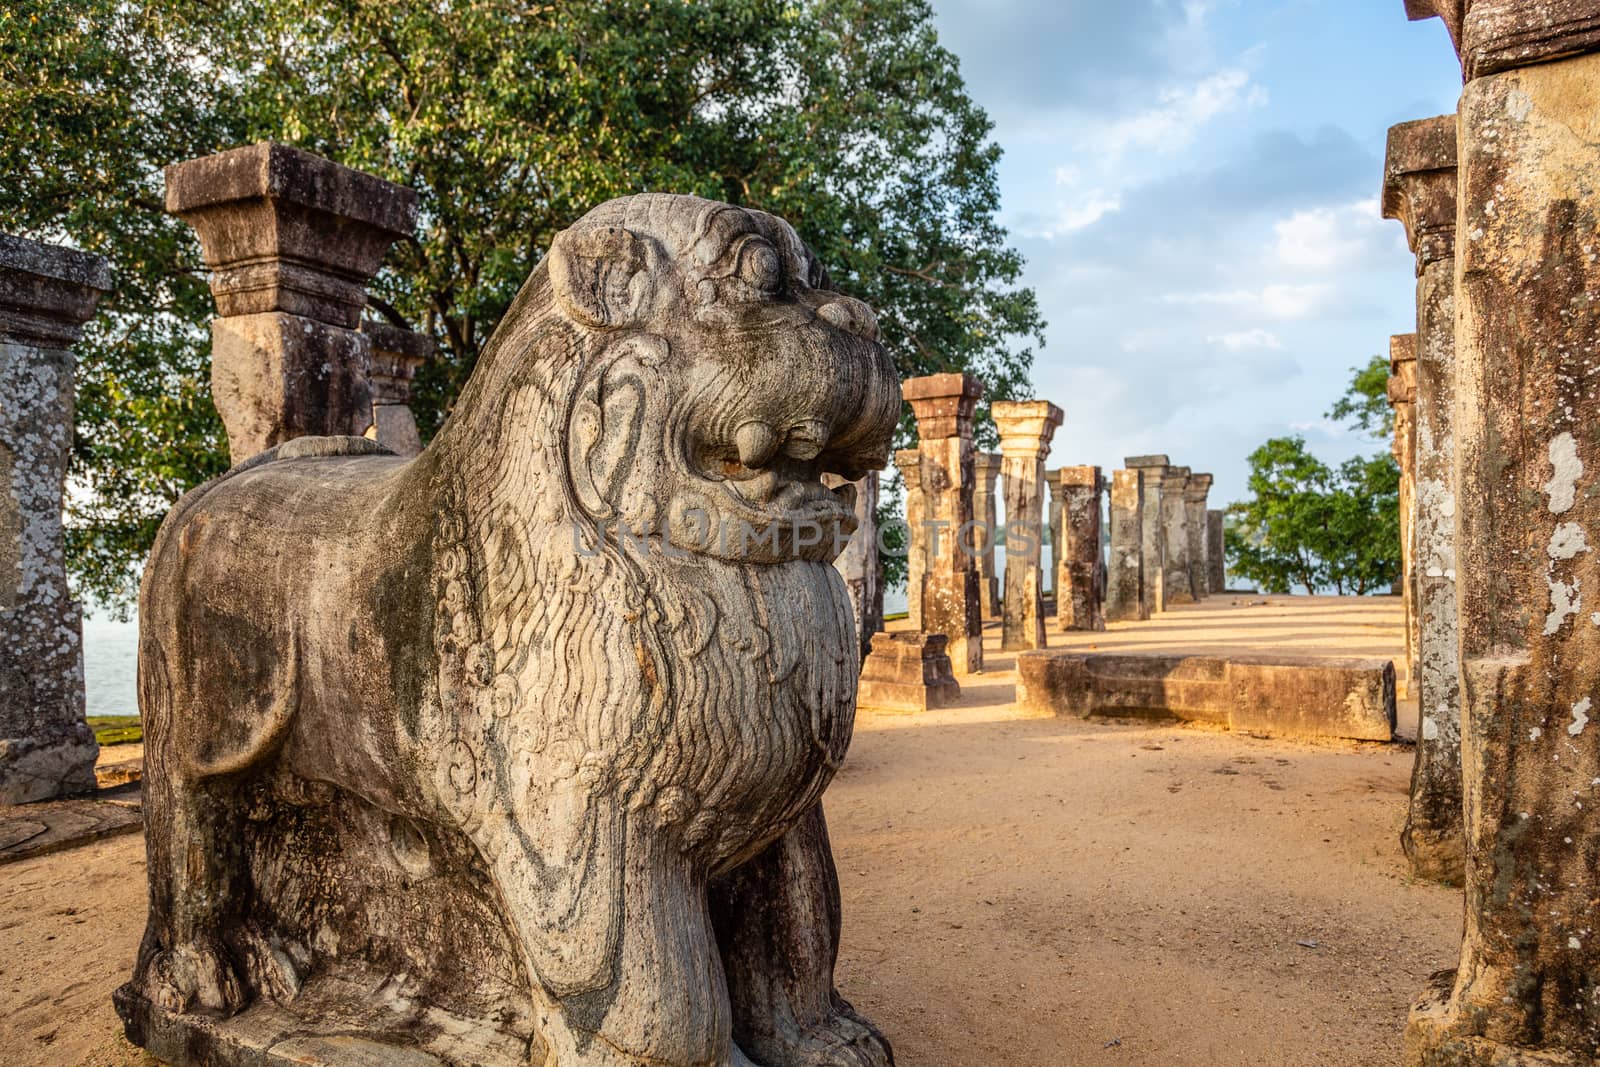 Lions statues at Nissanka Malla King’s audience hall, Polonnaruwa, Sri Lanka